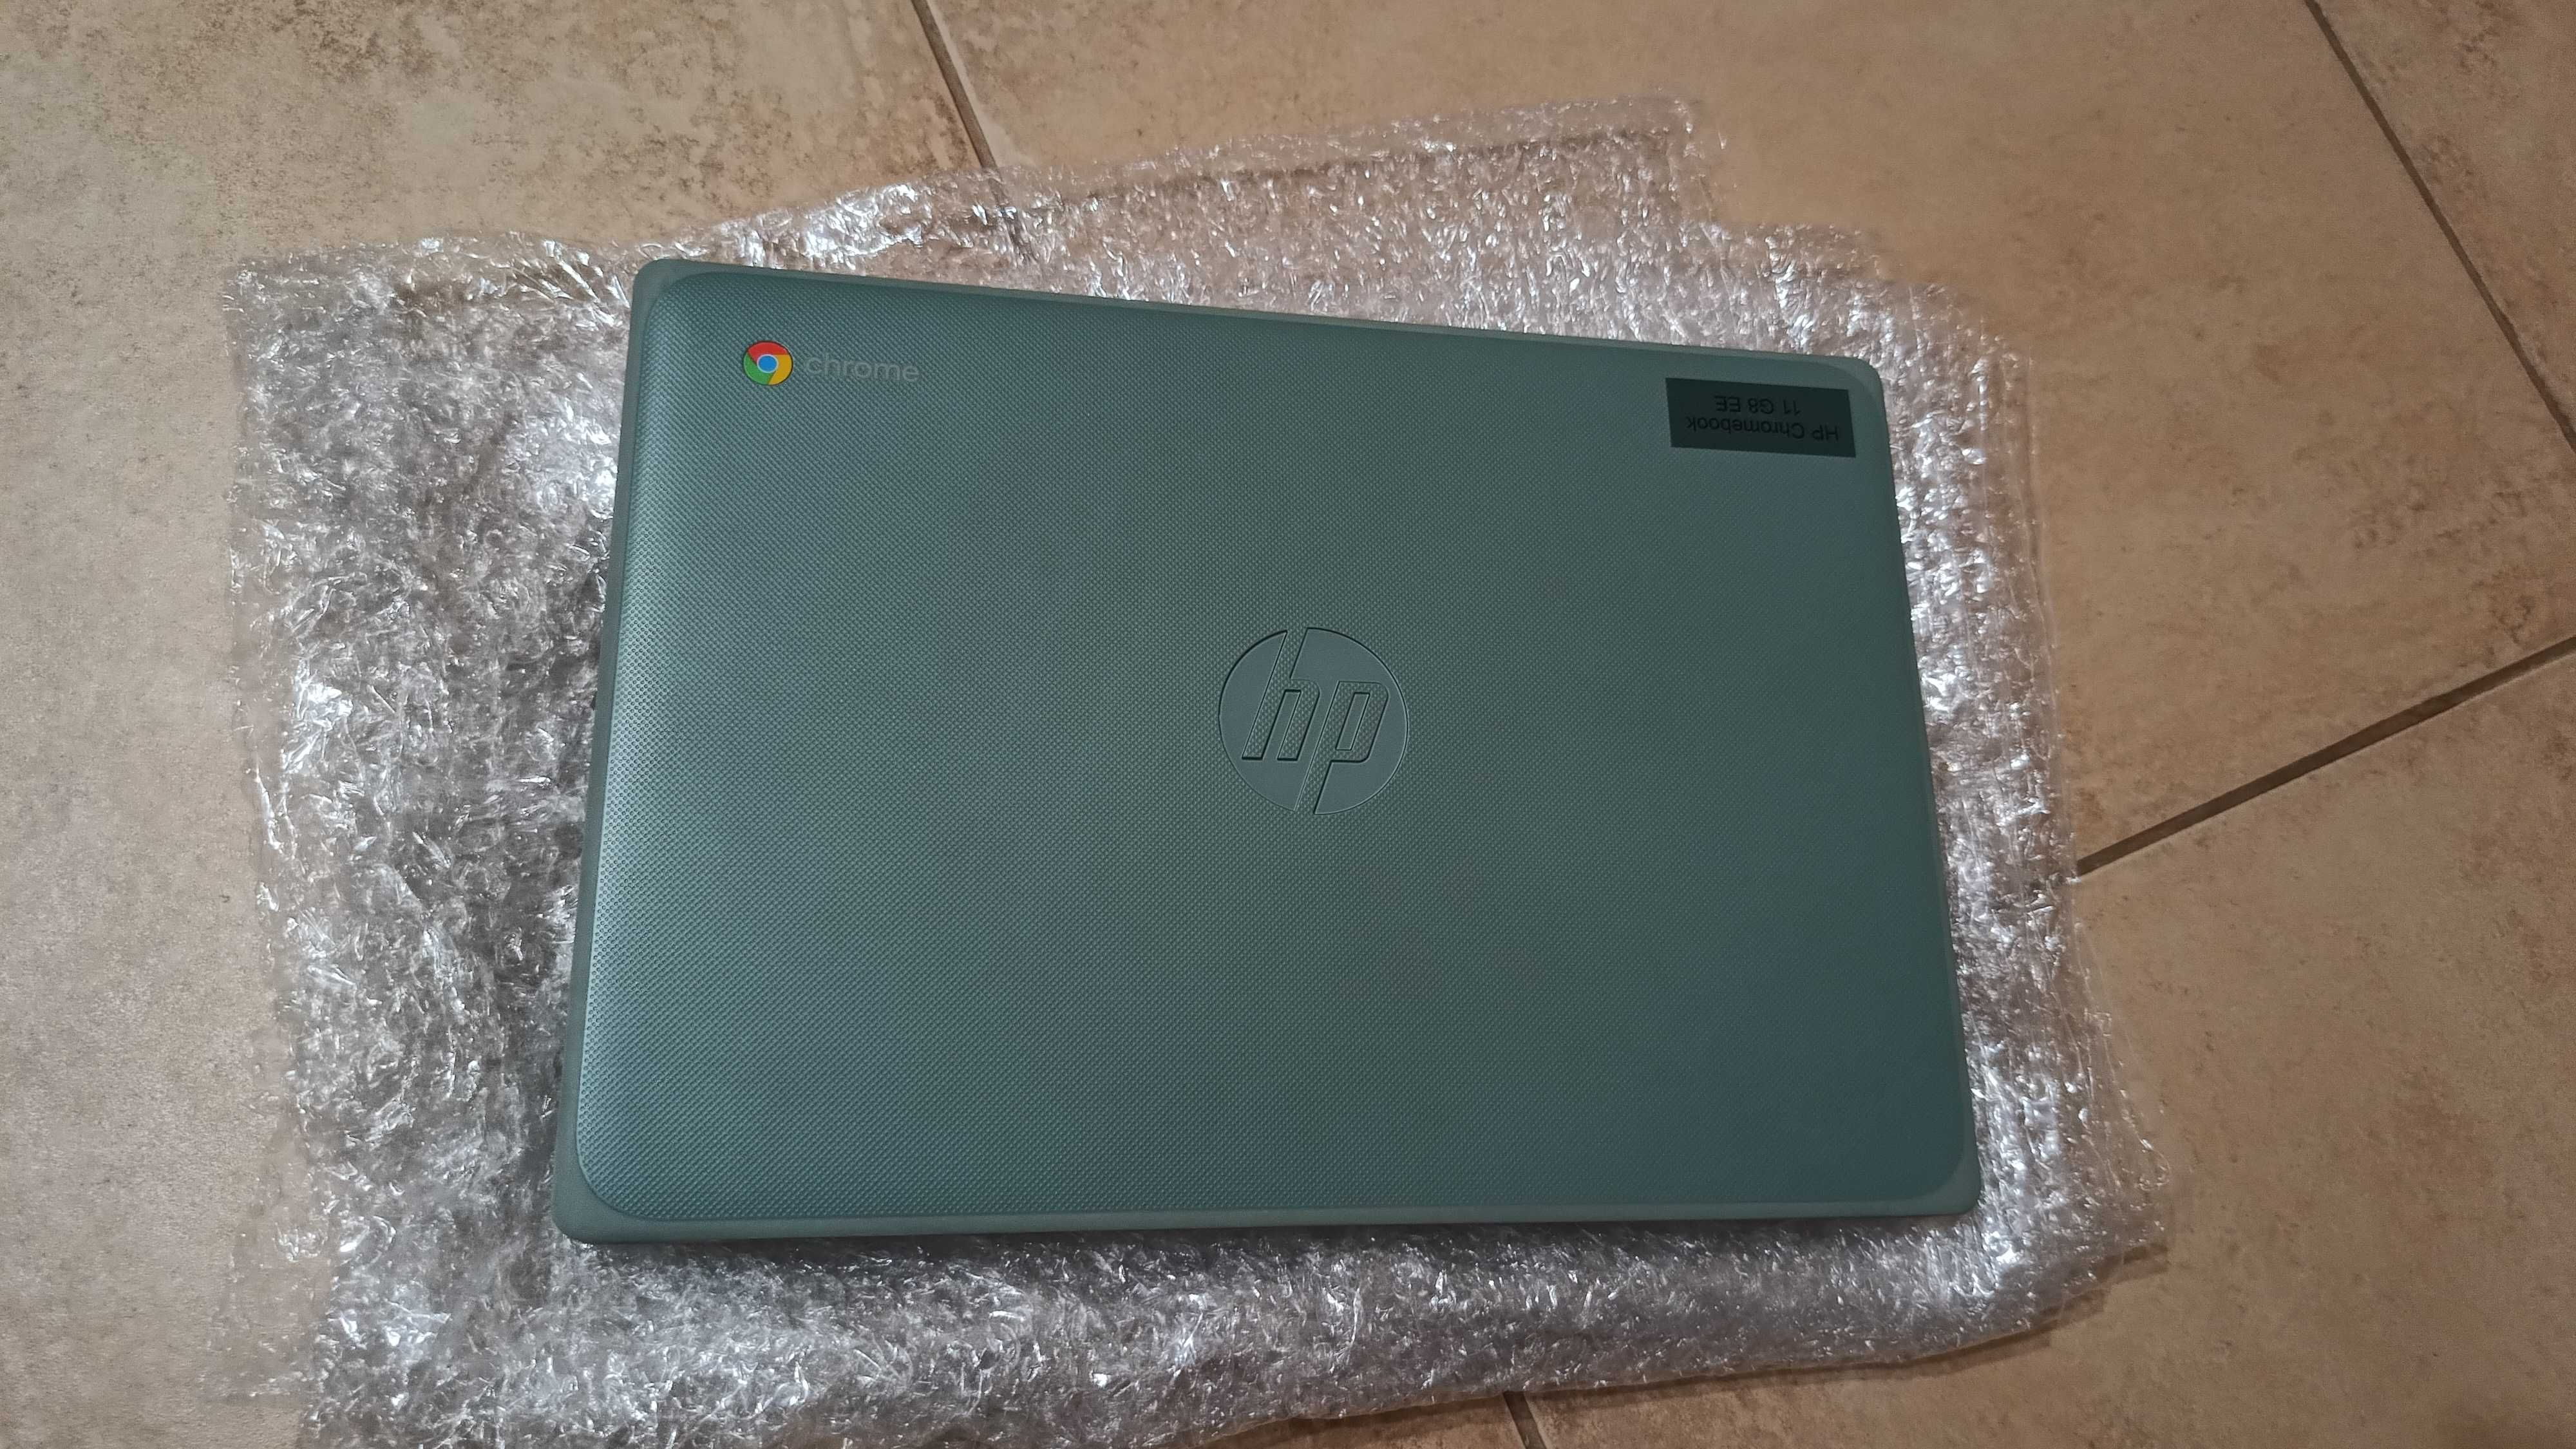 БУ Ноутбук Chromebook HP 11 G8 4/32 стан нового AMD A4  DDR4/від 8год